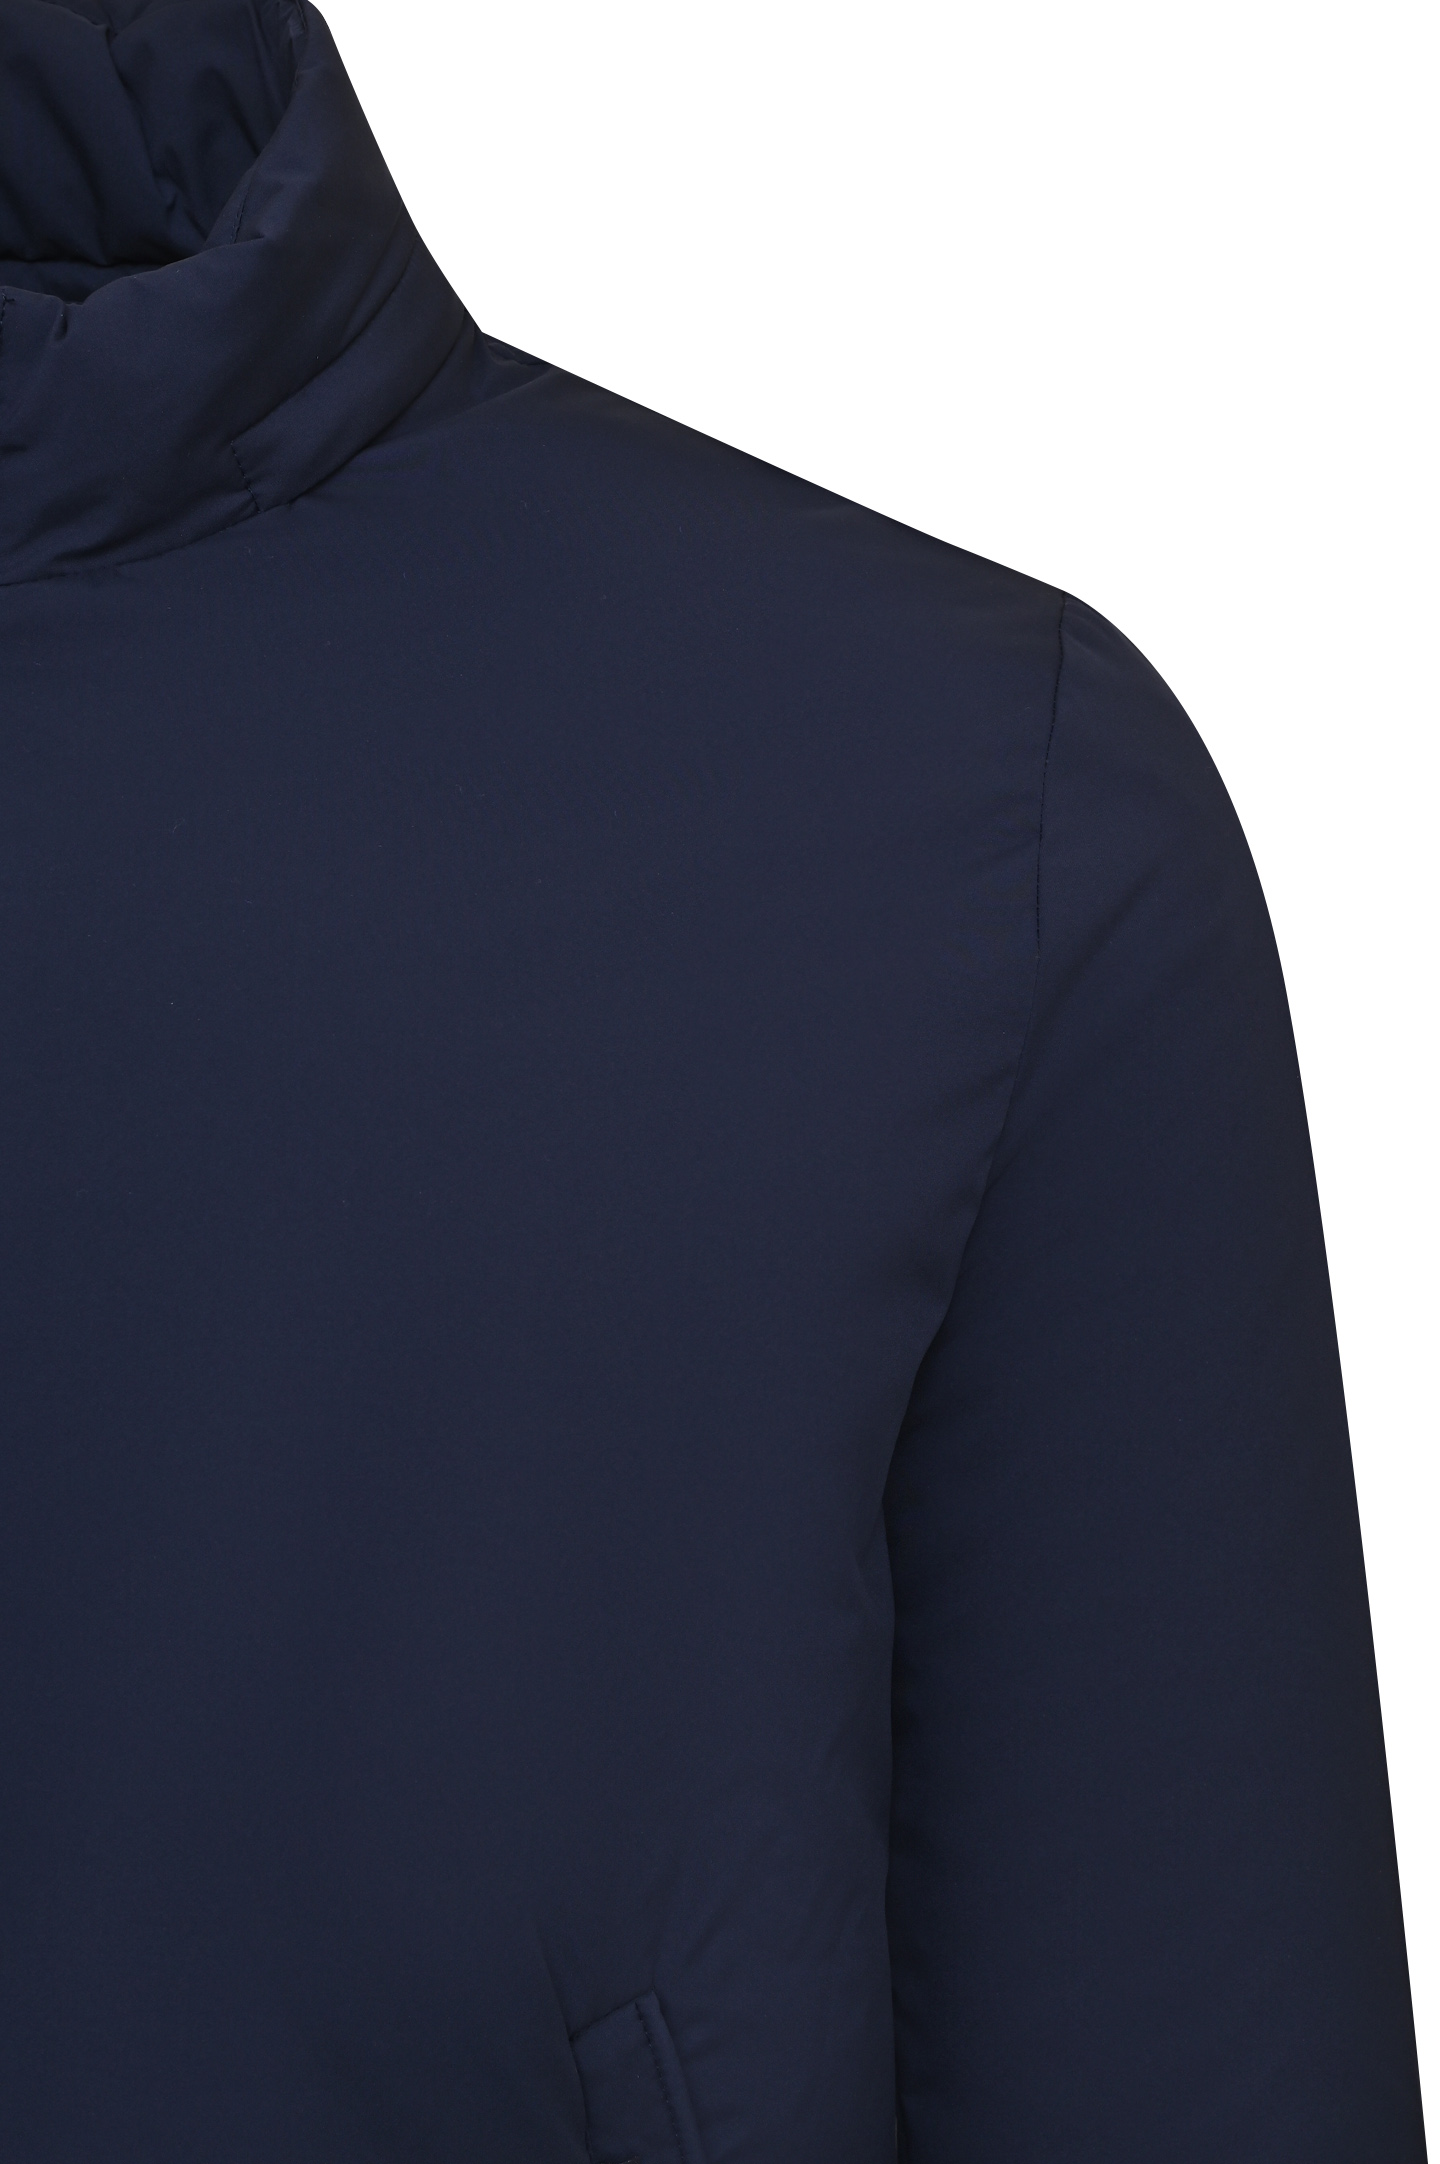 Куртка MOORER STAZIO-SKT, цвет: Синий, Мужской